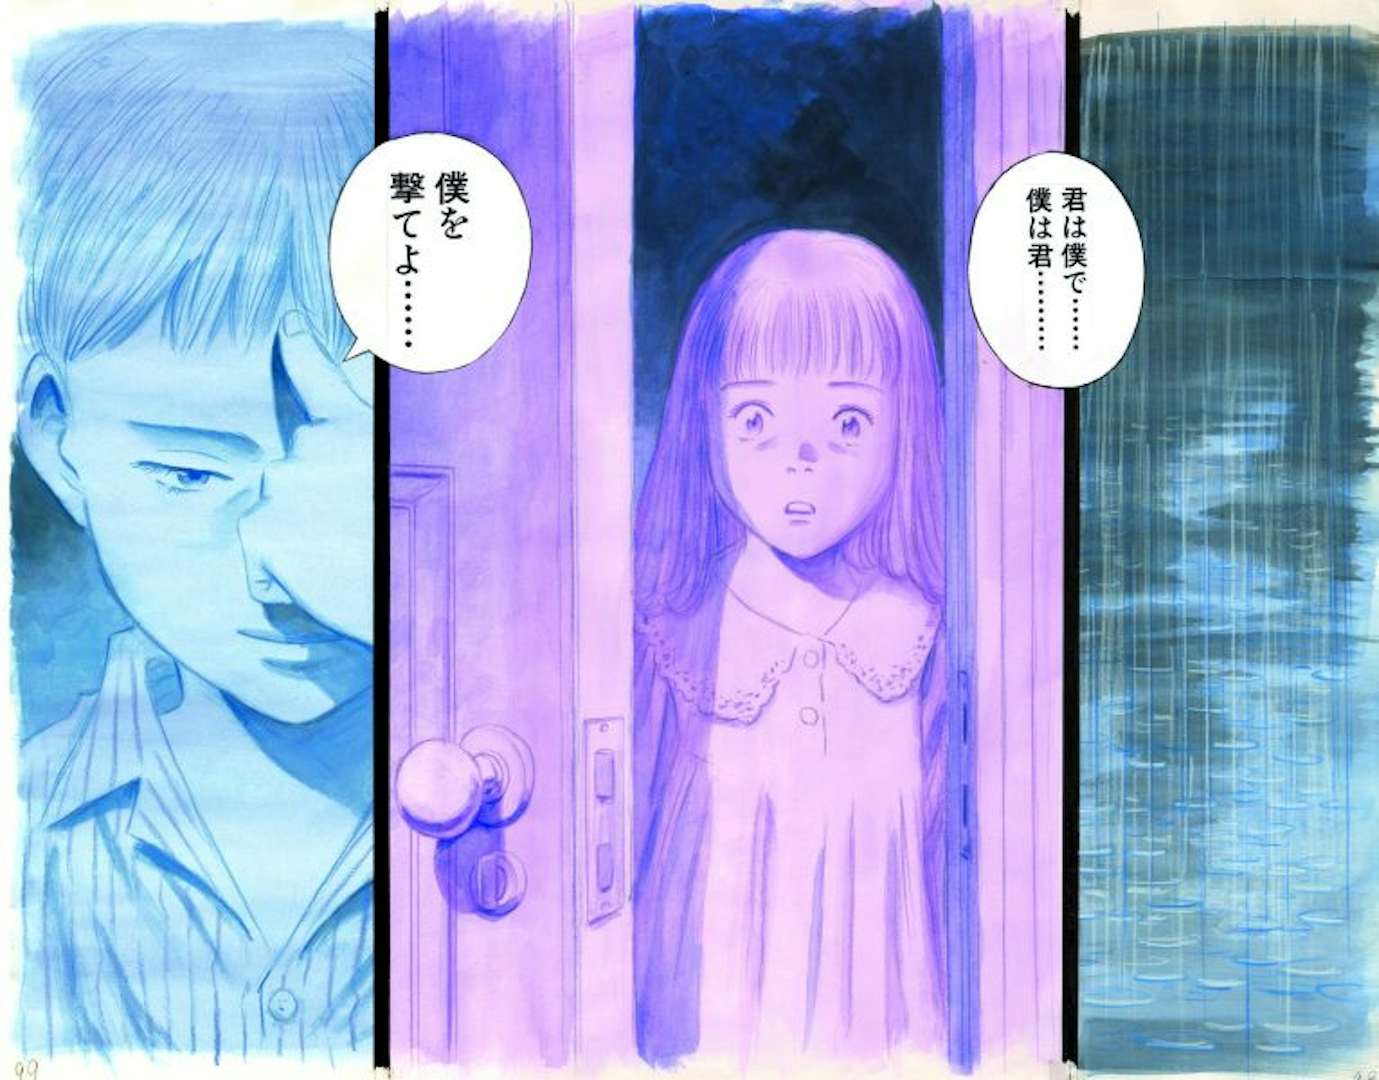 描いて描いて描きまくる 浦沢直樹の創作活動の全貌が明らかに 埼玉県立近代美術館にて個展が開催 美術手帖